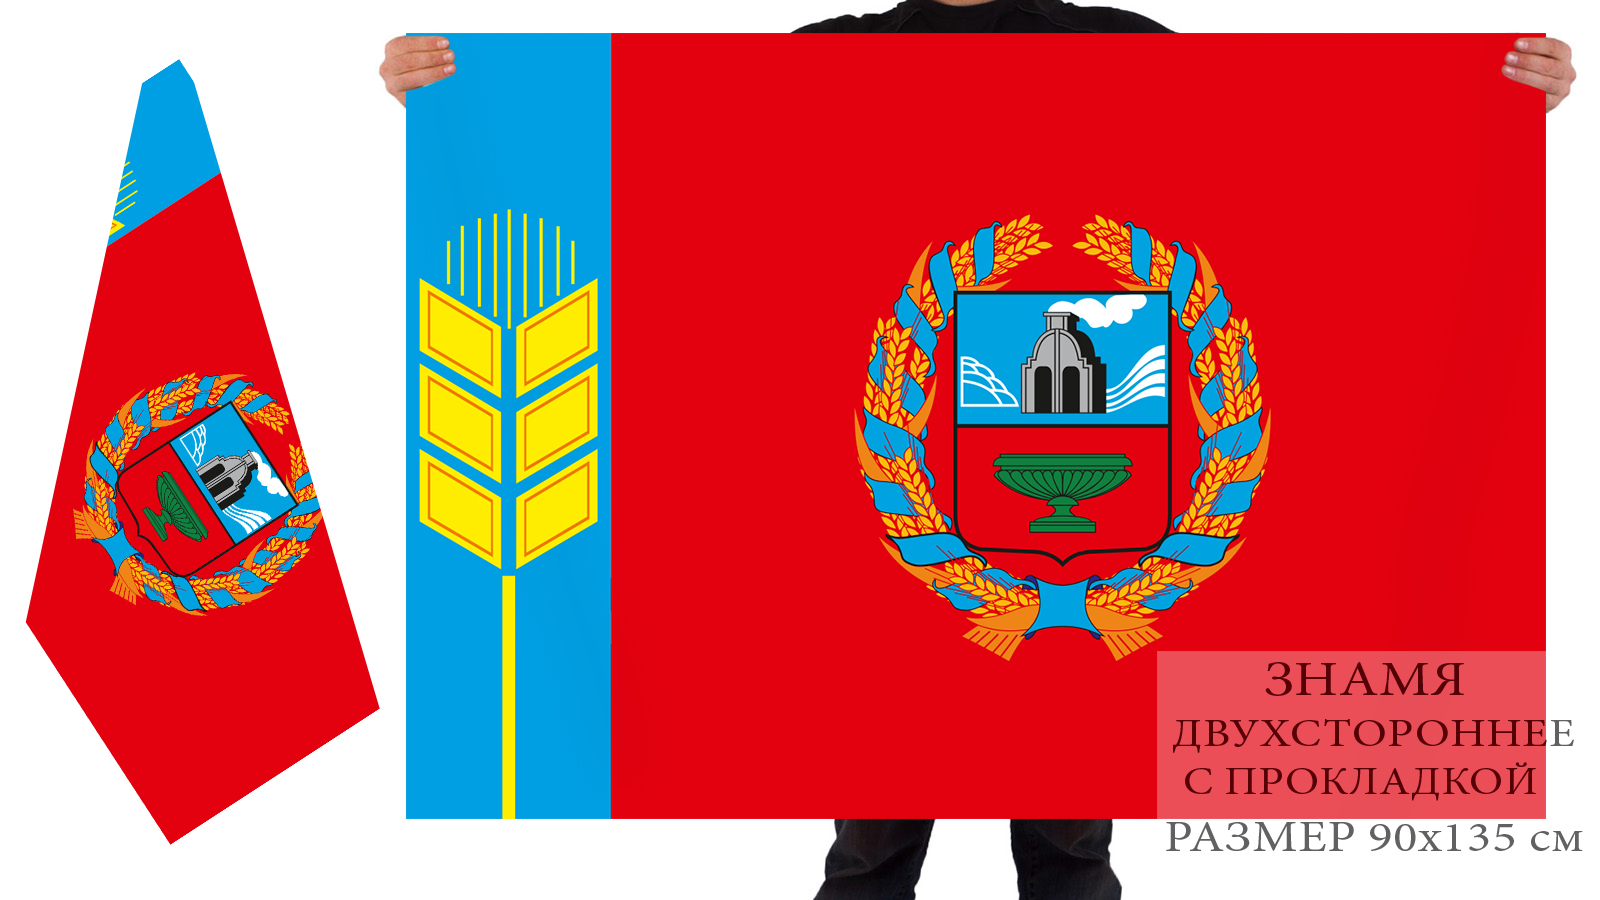 герб и флаг республики алтай фото